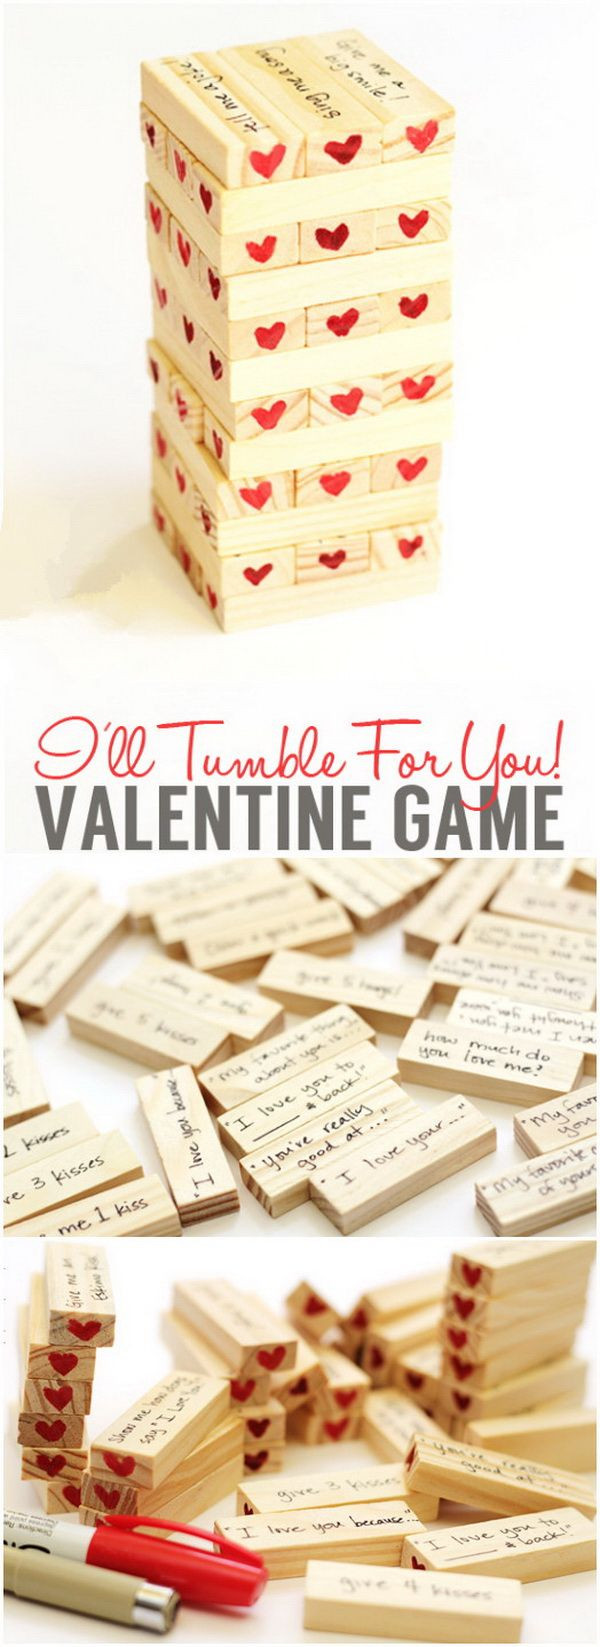 Good Valentines Day Gift Ideas Boyfriend
 Easy DIY Valentine s Day Gifts for Boyfriend